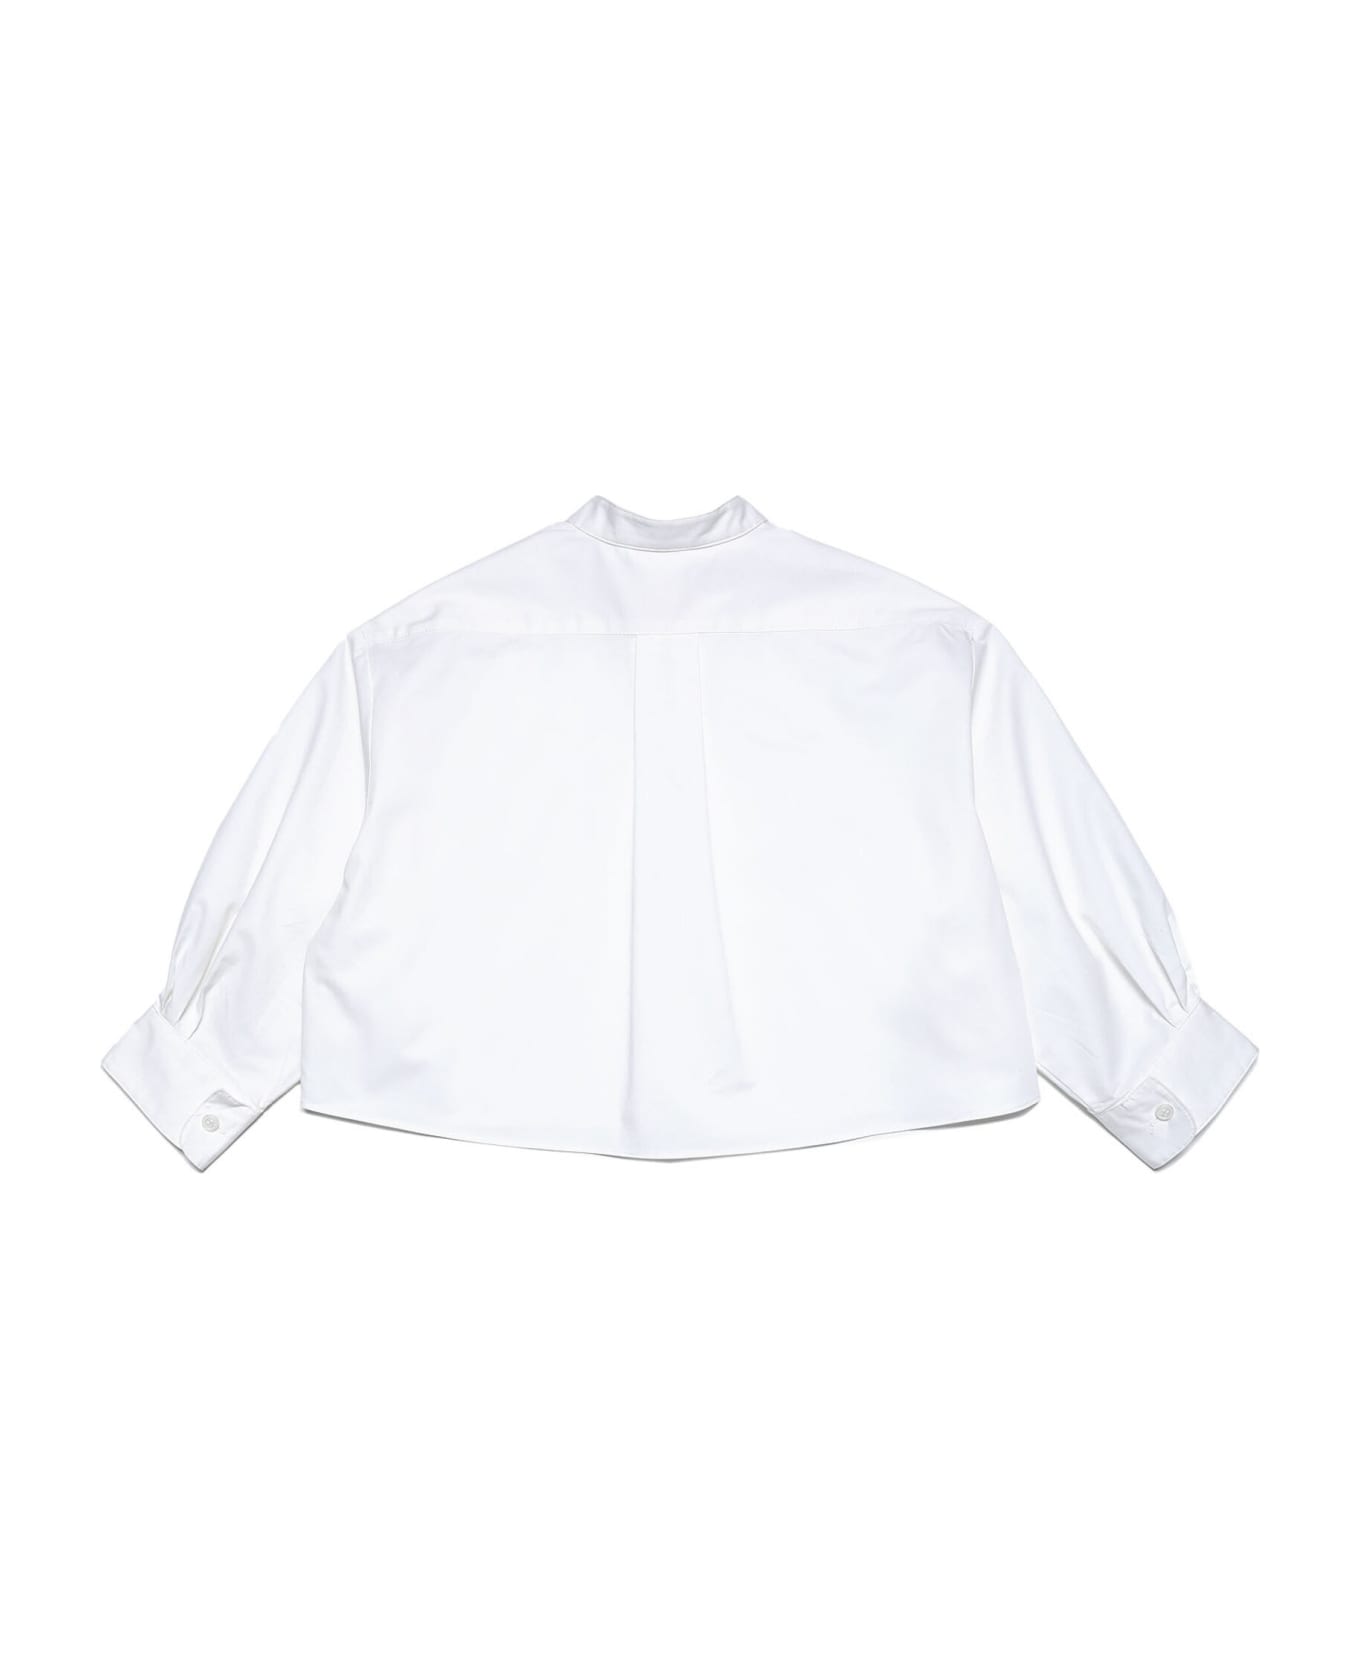 Marni Mc88f Shirt Marni - White